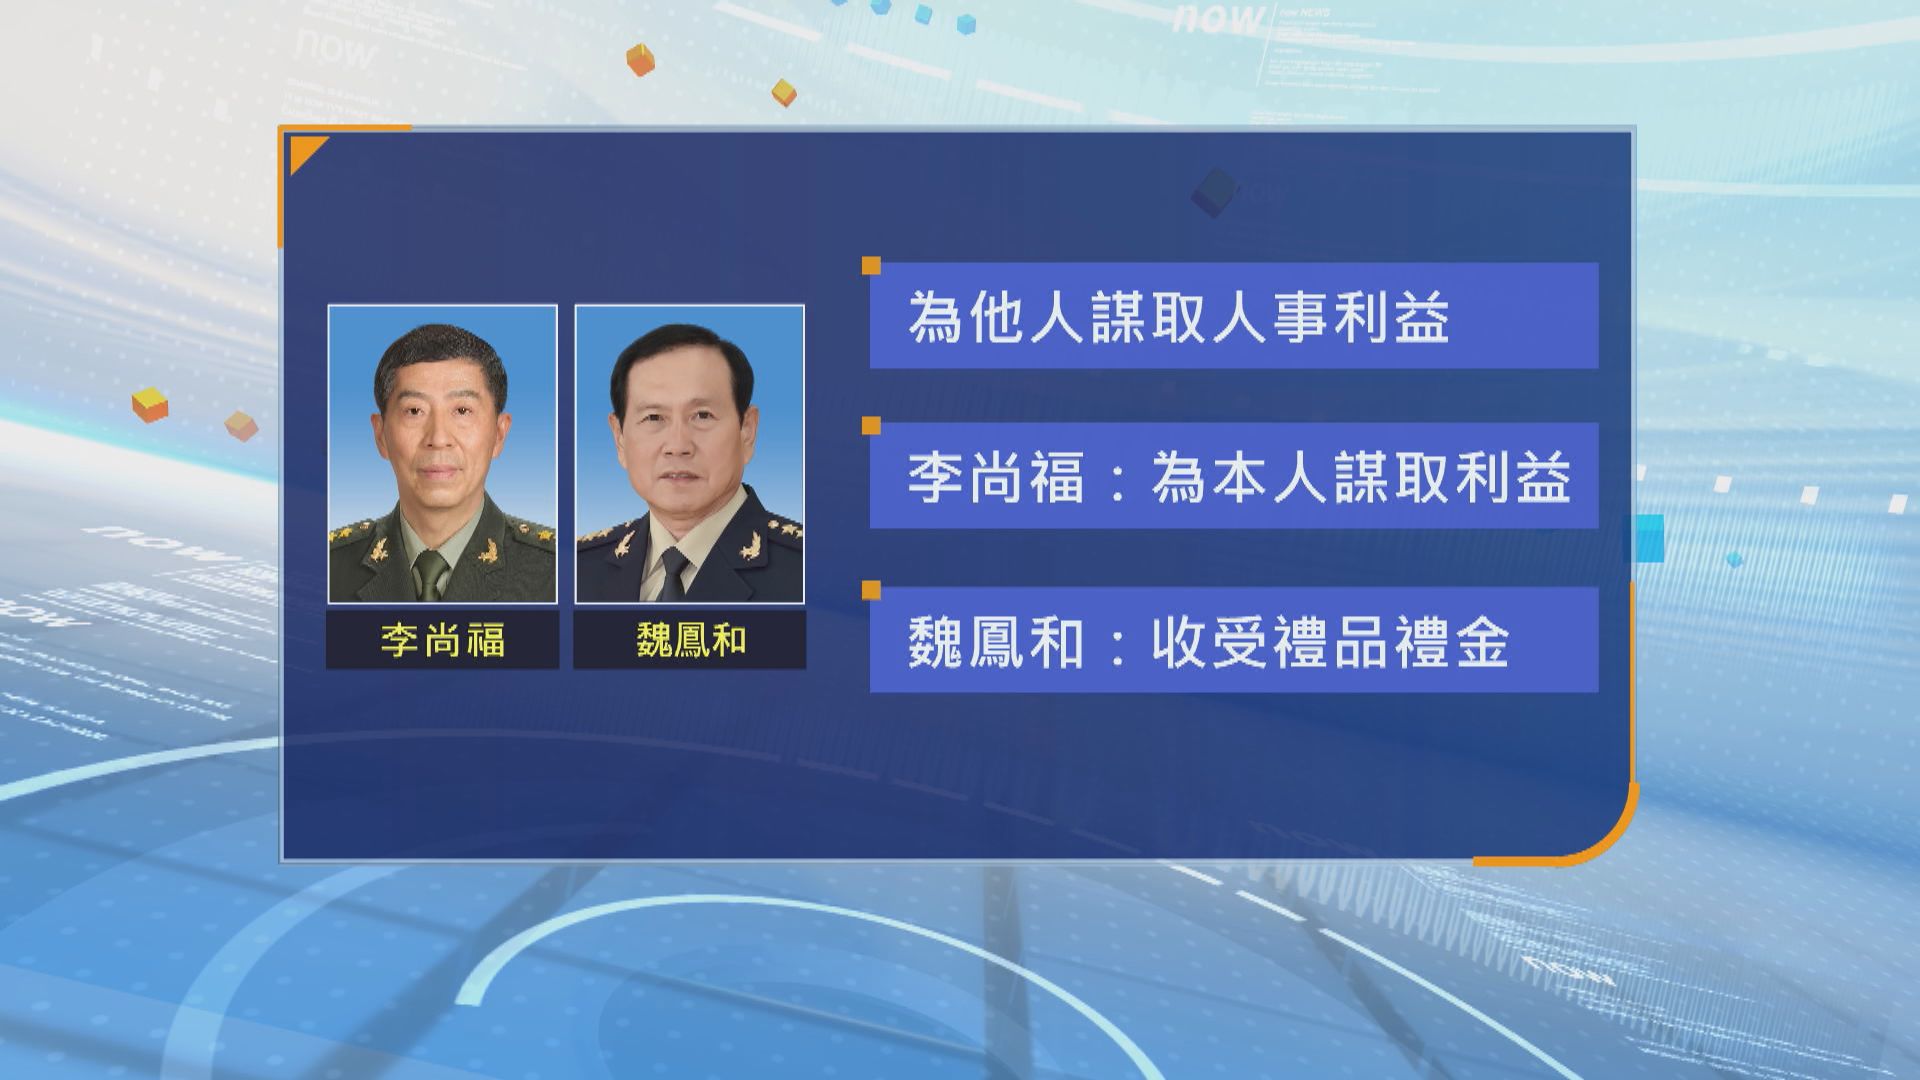 李尚福與魏鳳和被開除黨籍處分 調查指兩人涉嫌受賄